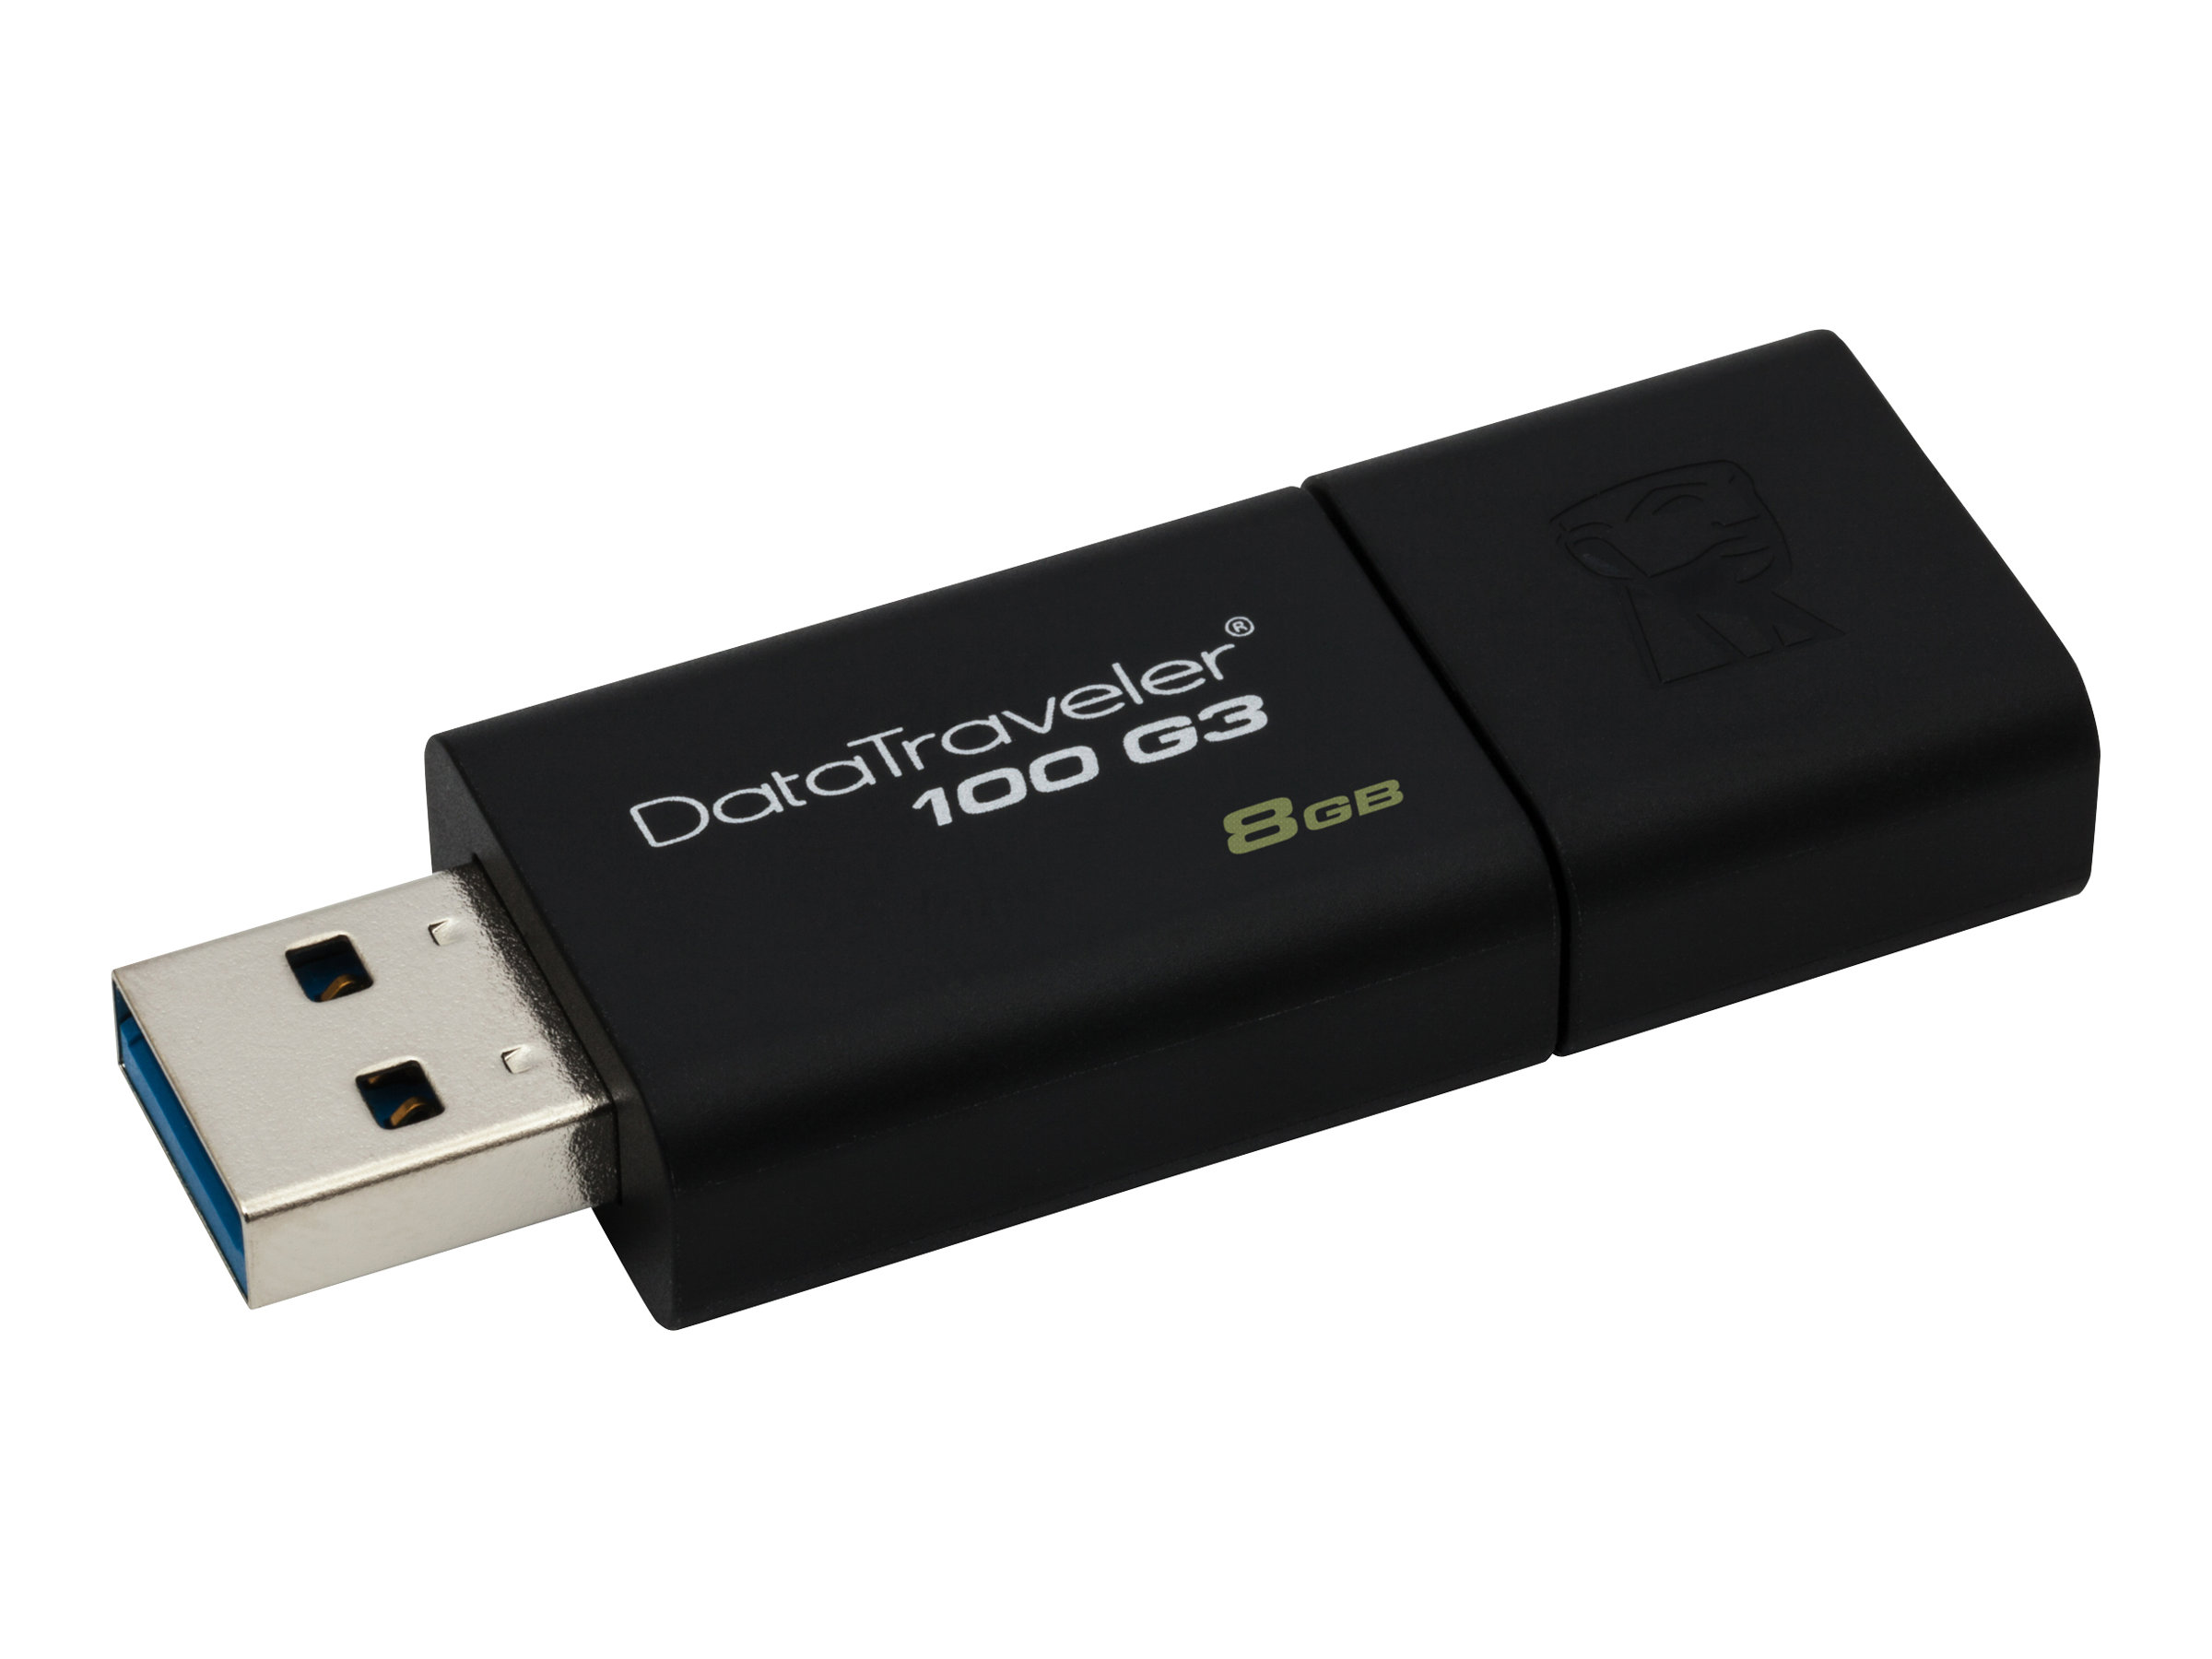 Kingston DataTraveler 100 G3 - USB flash drive - 8 GB - USB 3.0 - black - for P/N: MLWG3ER - image 3 of 5